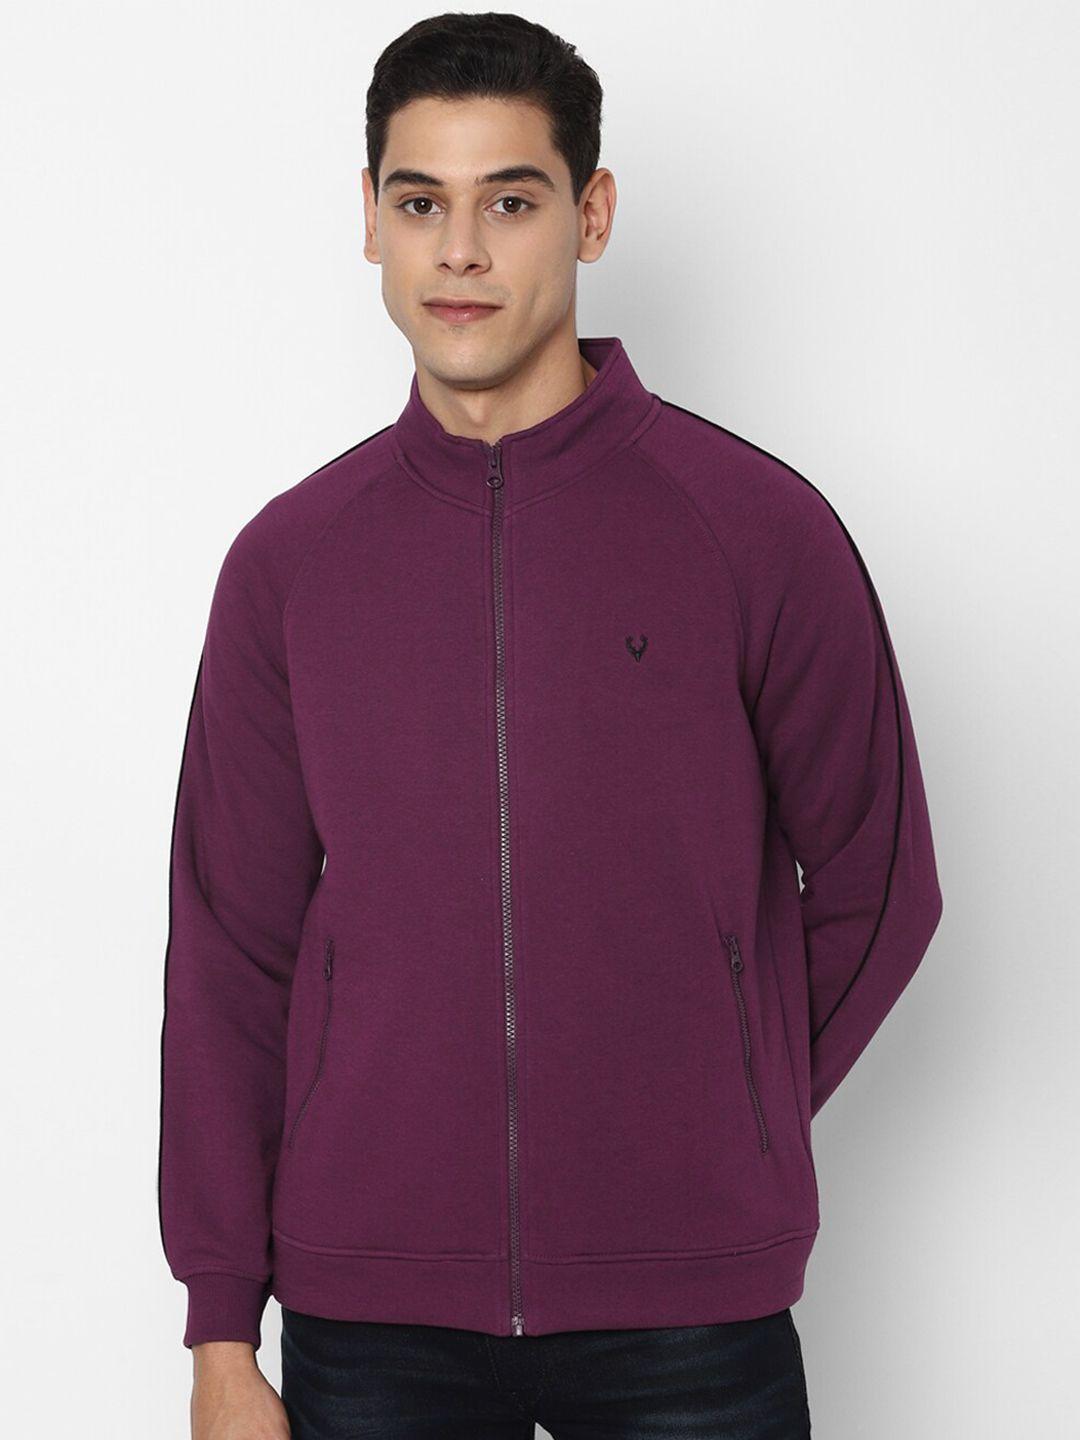 allen-solly-men-purple-sweatshirt